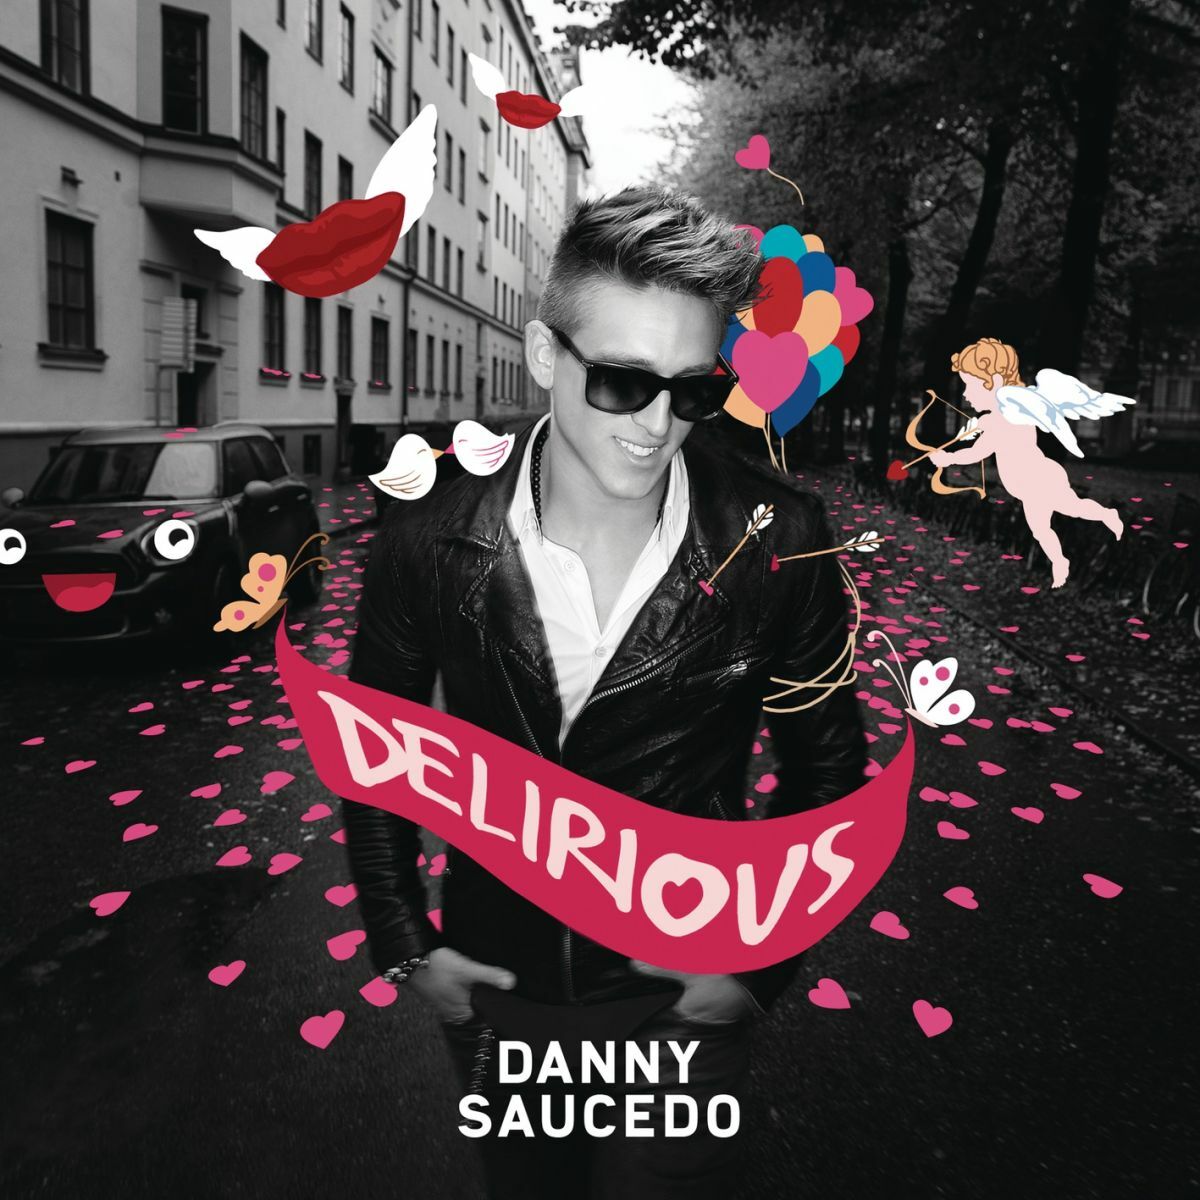 Danny Saucedo Delirious cover artwork